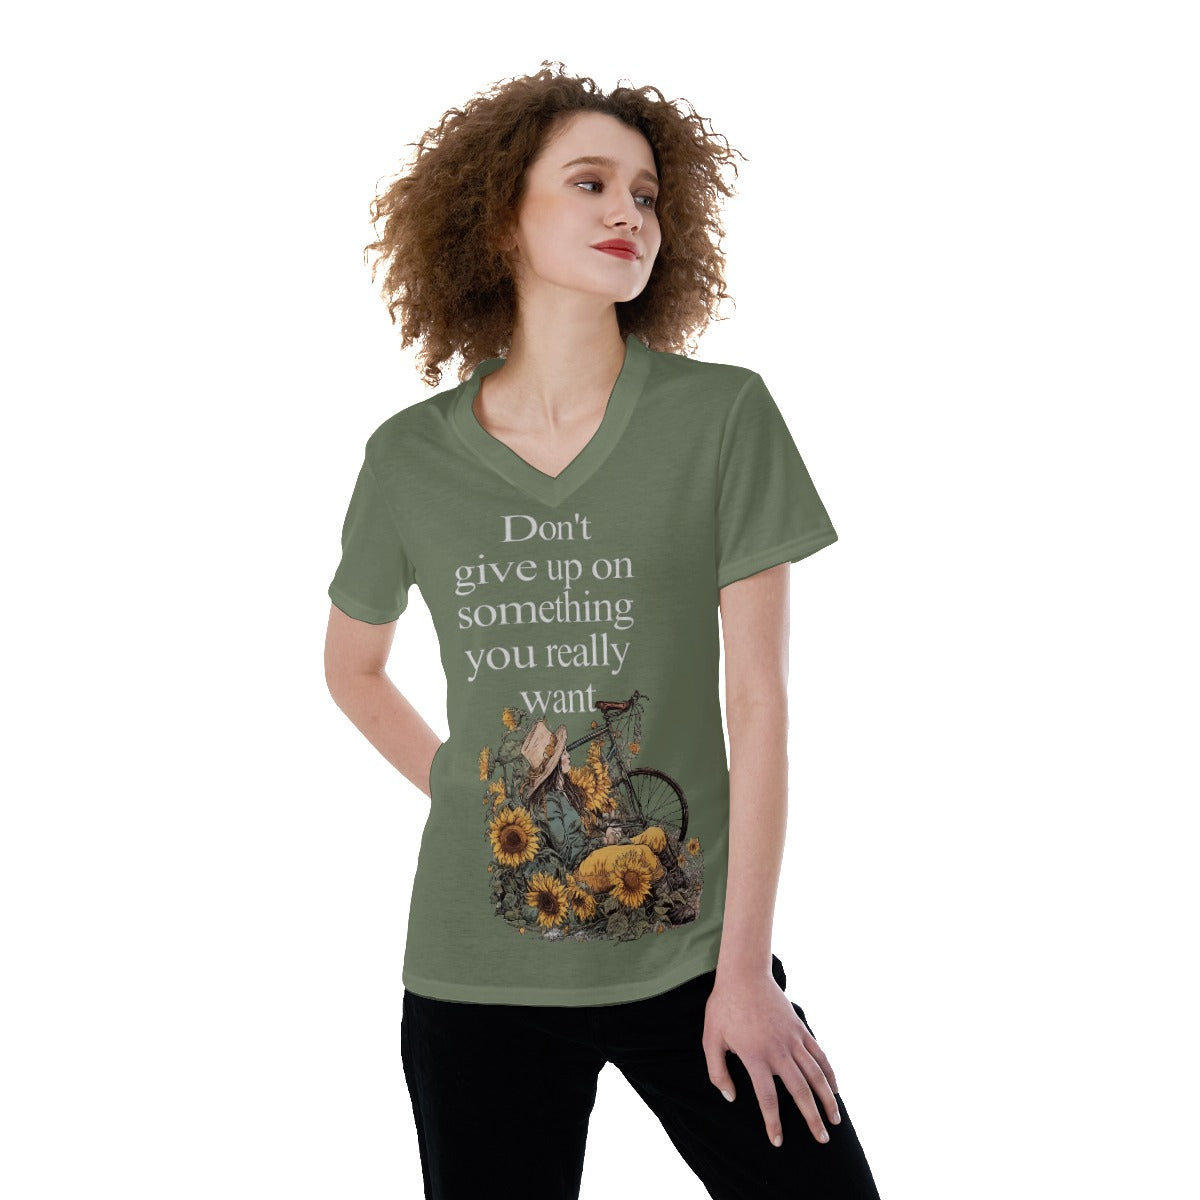 All-Over Print V-neck Women's T-shirt